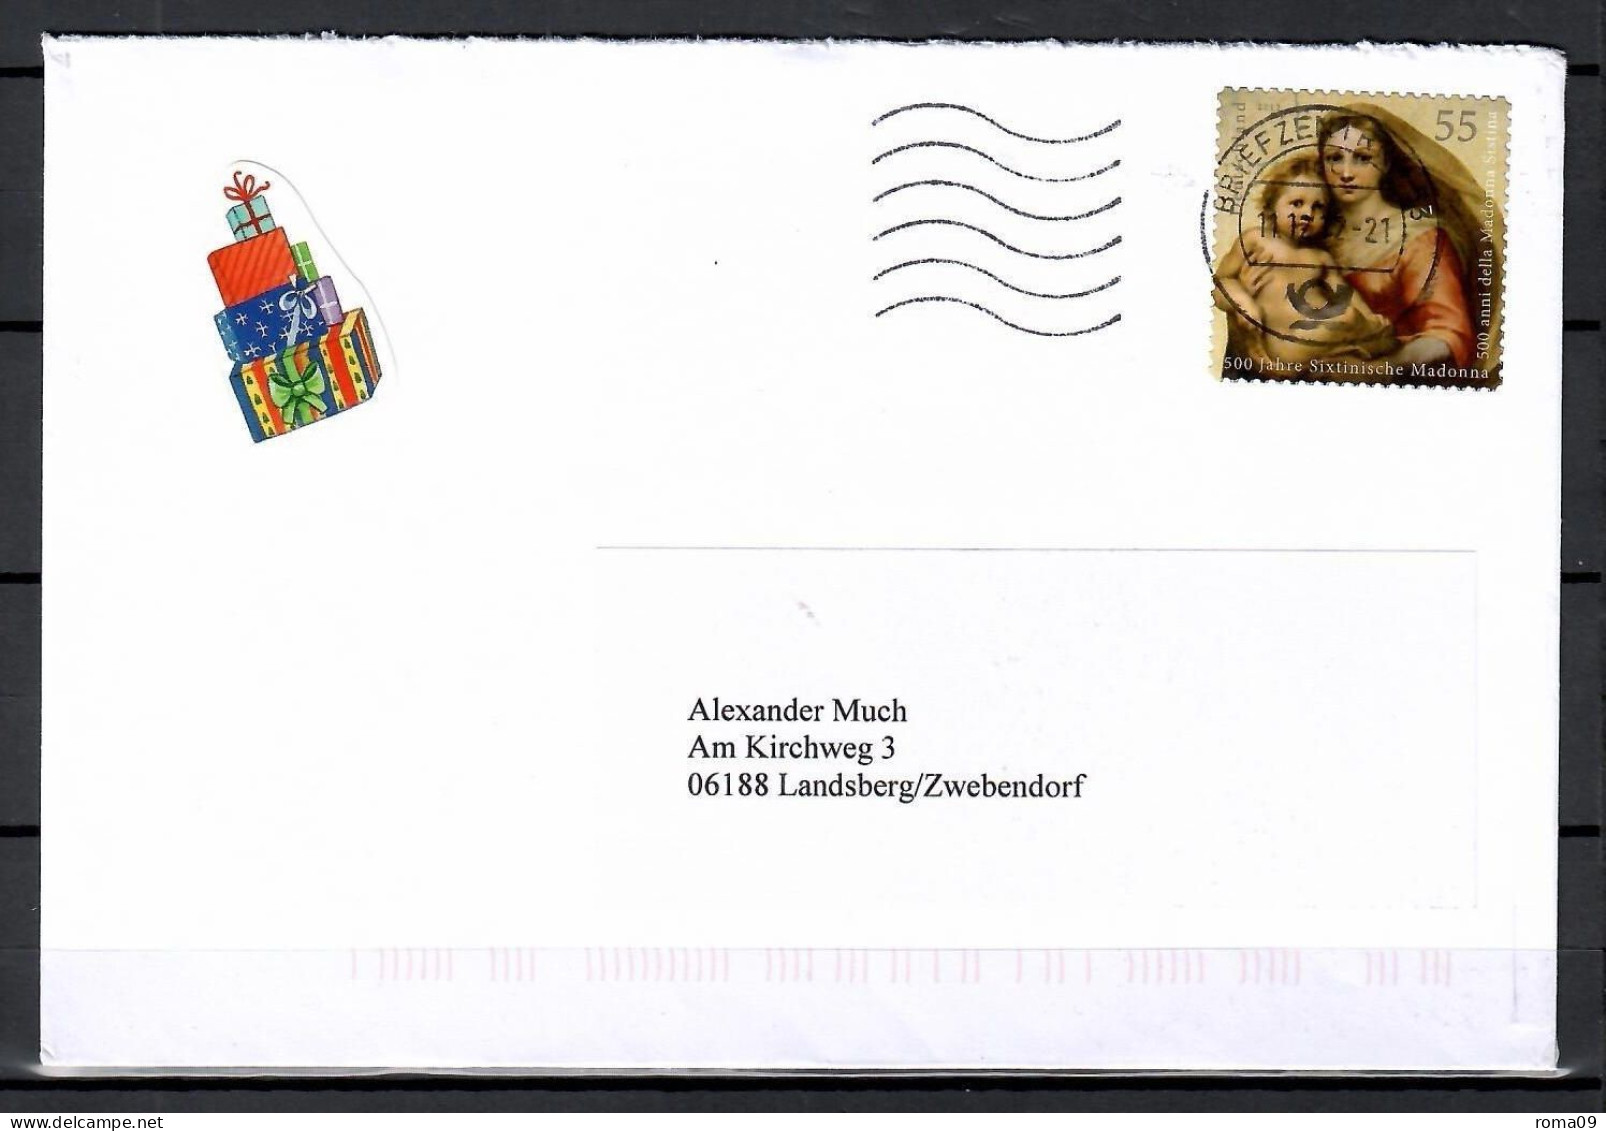 MiNr. 2965; 500 J. Sixtinische Madonna, Auf Portoger. Brief Von BZ 53 Nach Landsberg; E-92 - Lettres & Documents